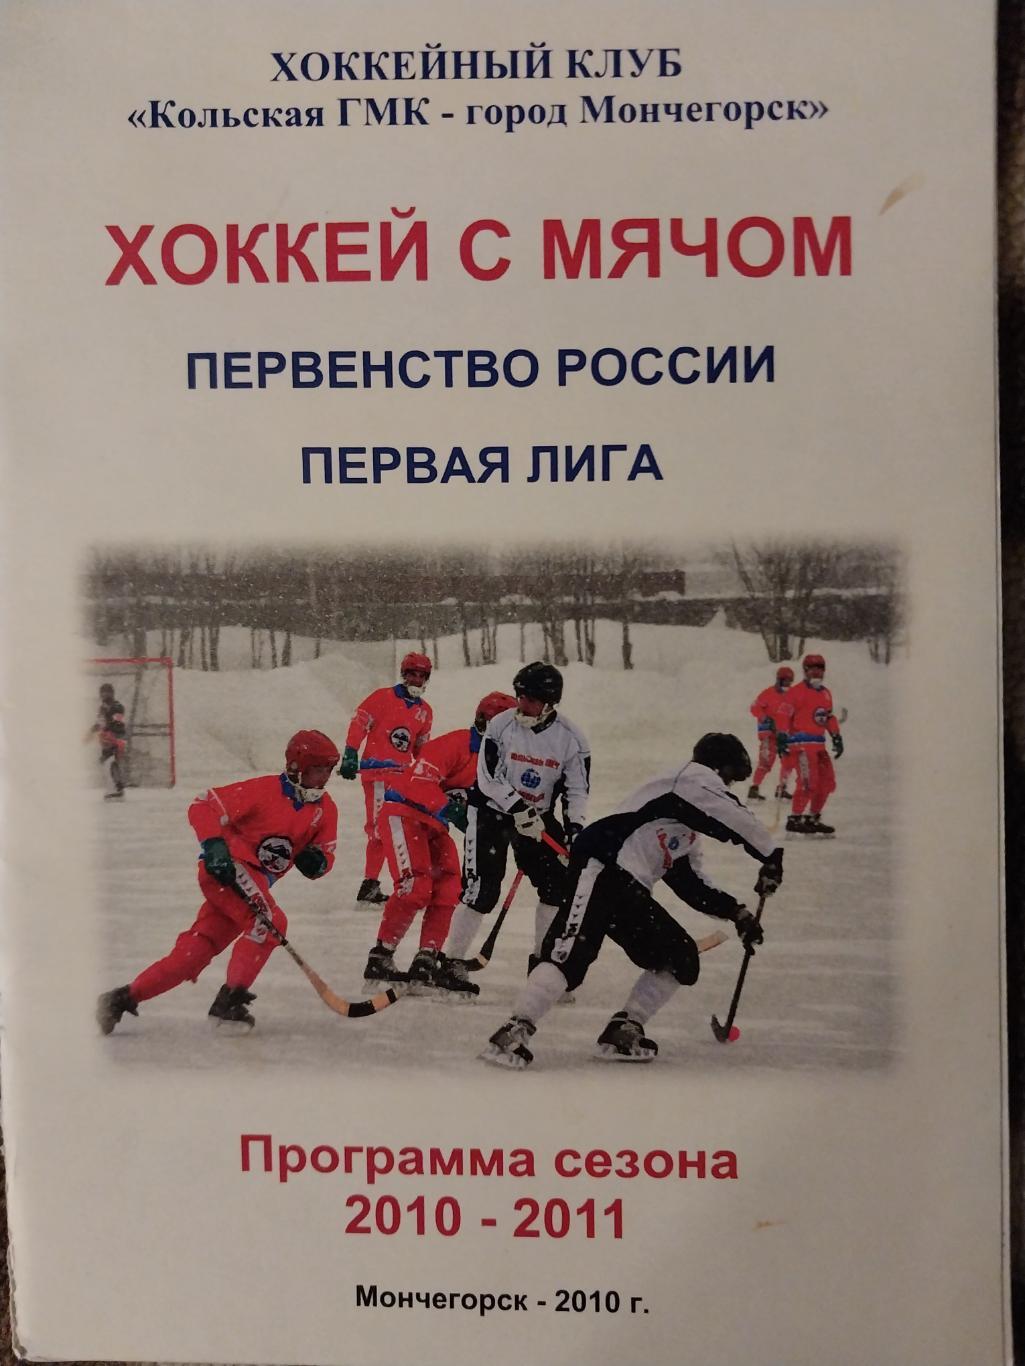 Хоккей с мячом. Мончегорск. ХК Кольская ГМК 2010-2011